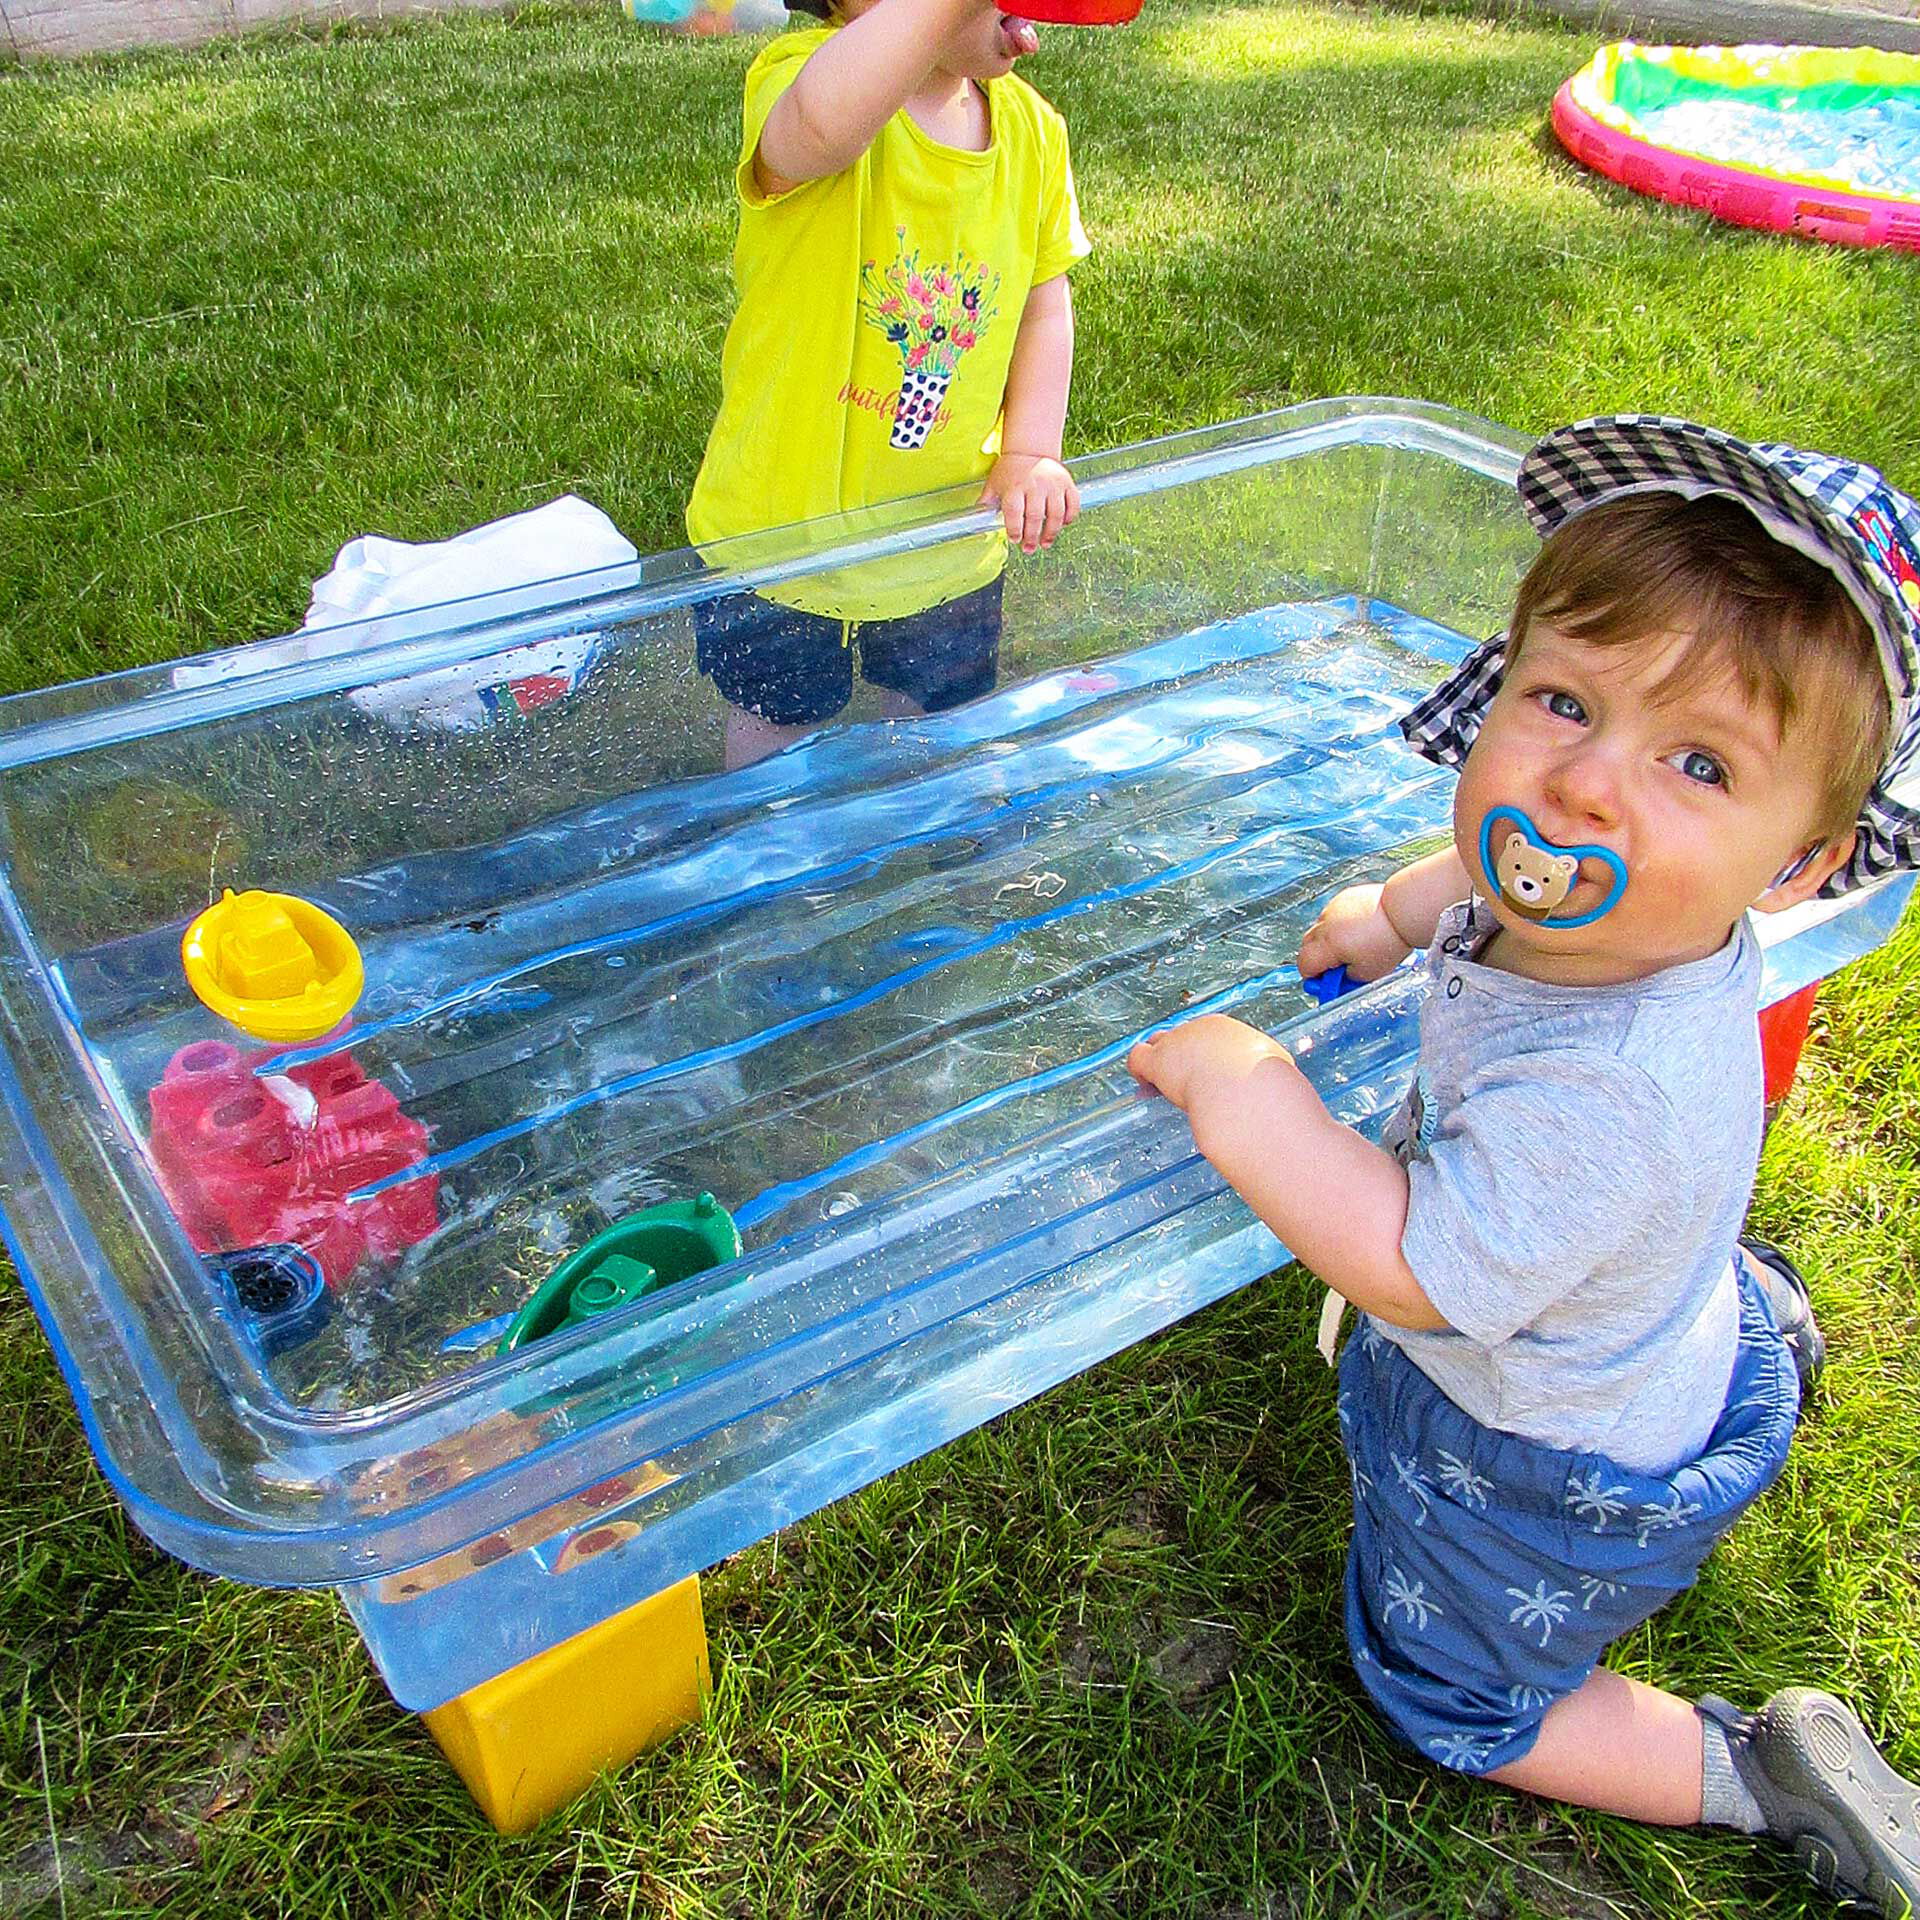 Zwei Kleinkinder spielen mit Spielzeug in einer großen Plastikwanne mit Wasser.